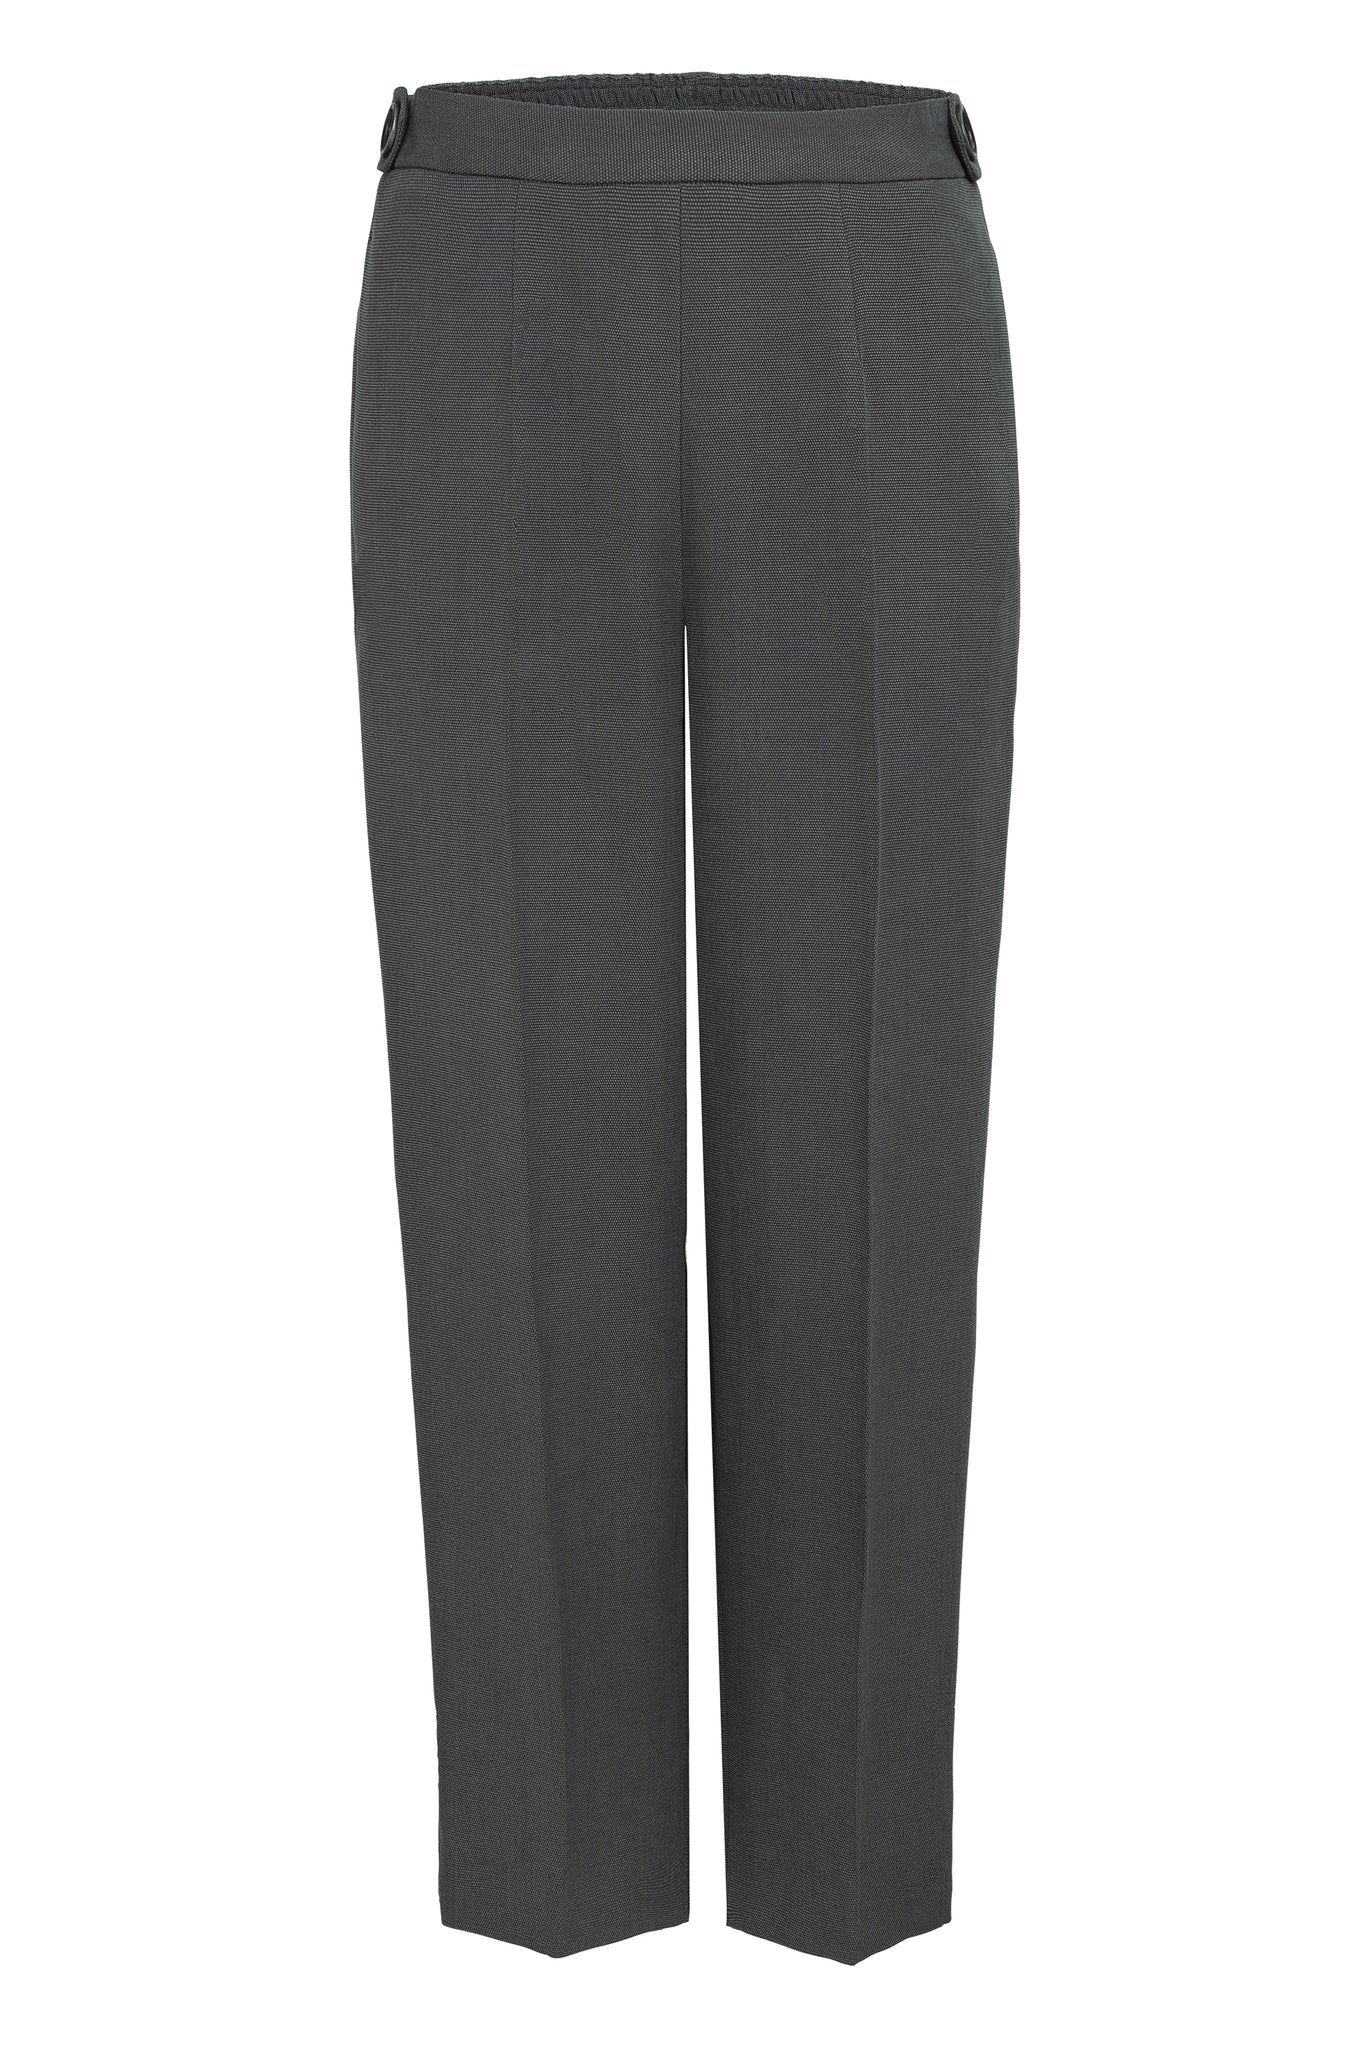 03/16 Mid-Waist Pants Tencel dark grey front - hello'ben store